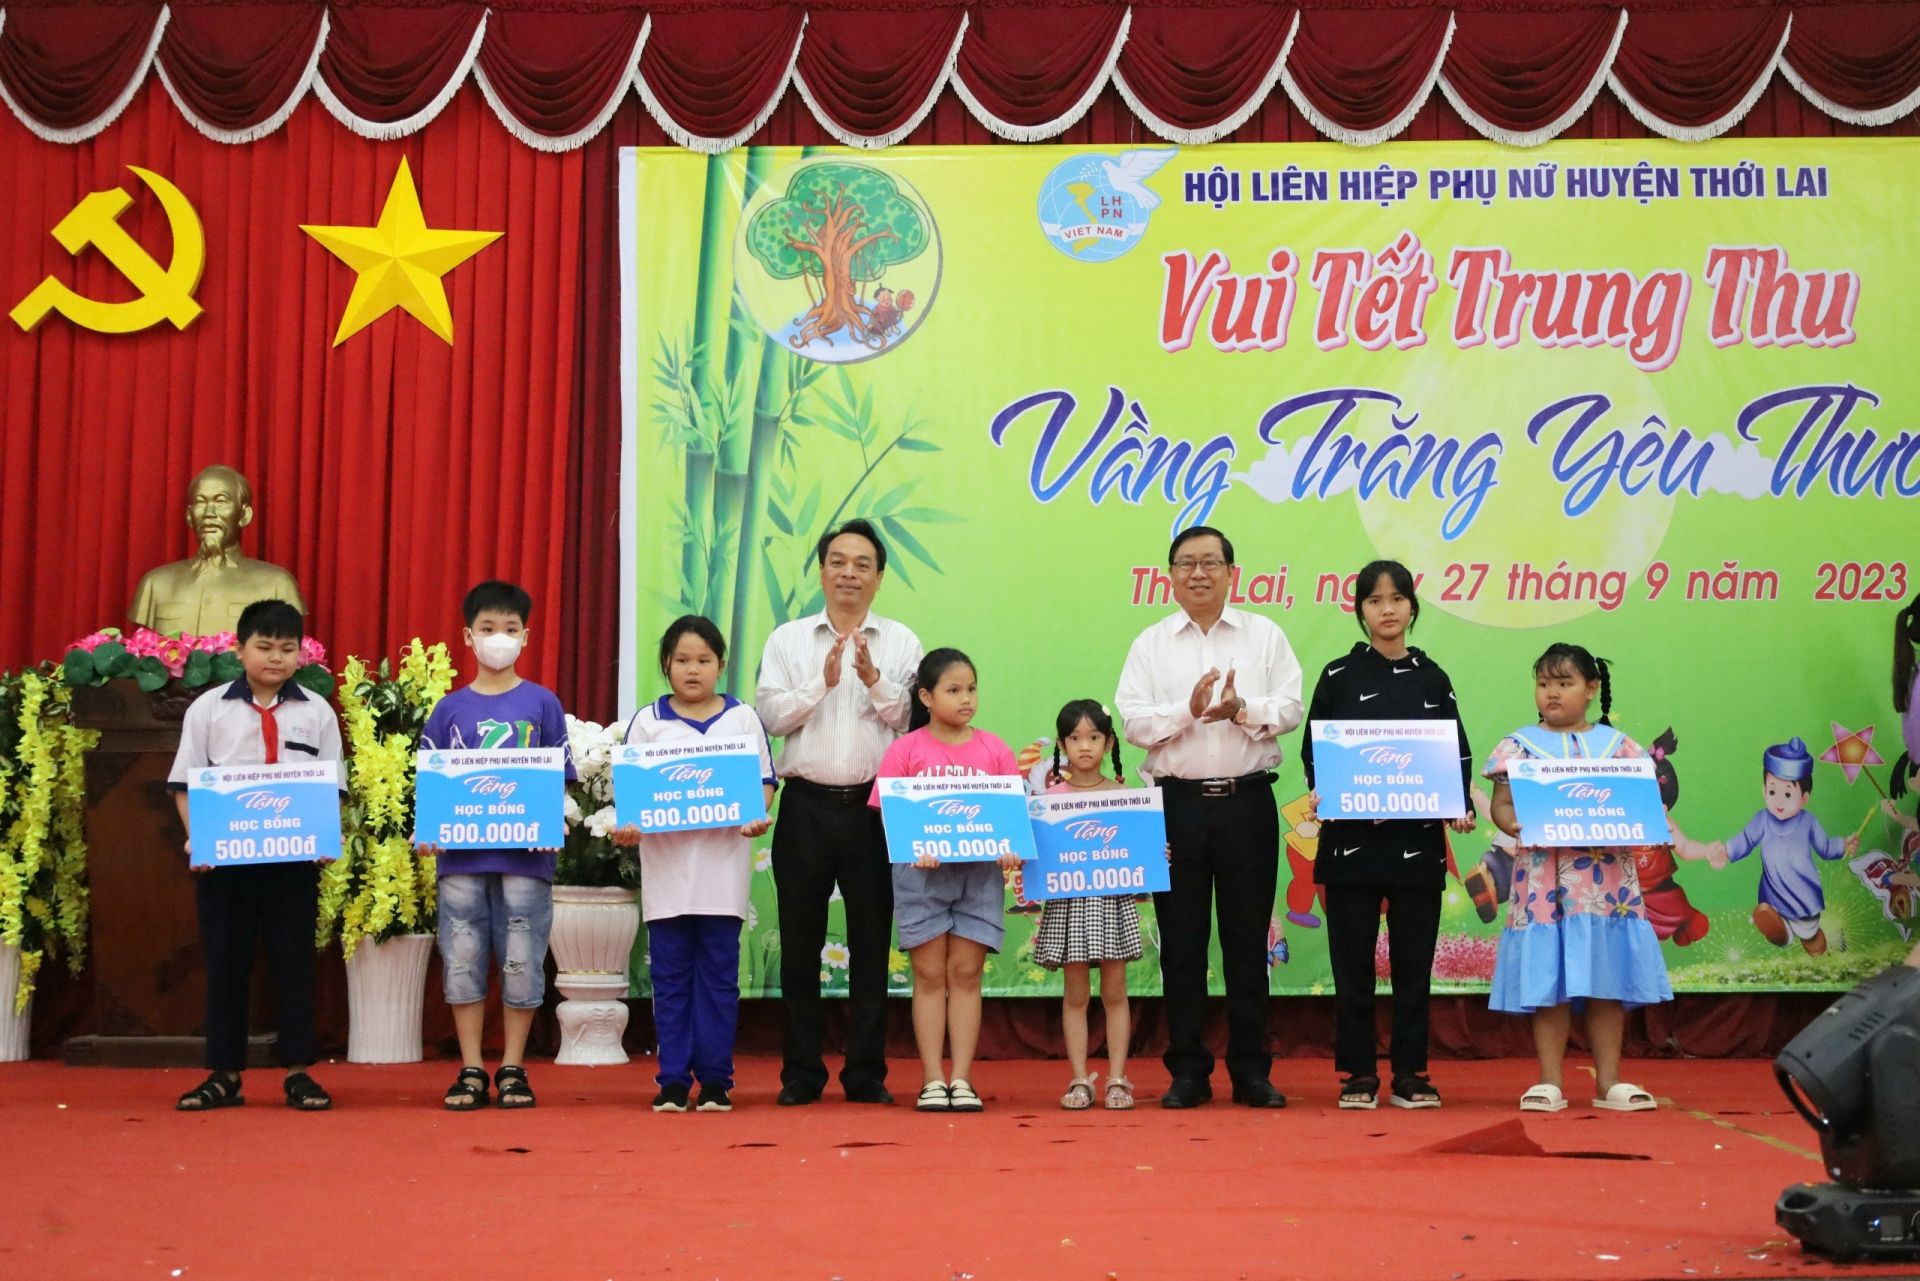 Hội Liên hiệp Phụ nữ huyện Thới Lai trao tặng học bổng đến các em học sinh hiếu học, có hoàn cảnh khó khăn nhân dịp Tết Trung thu năm 2023.